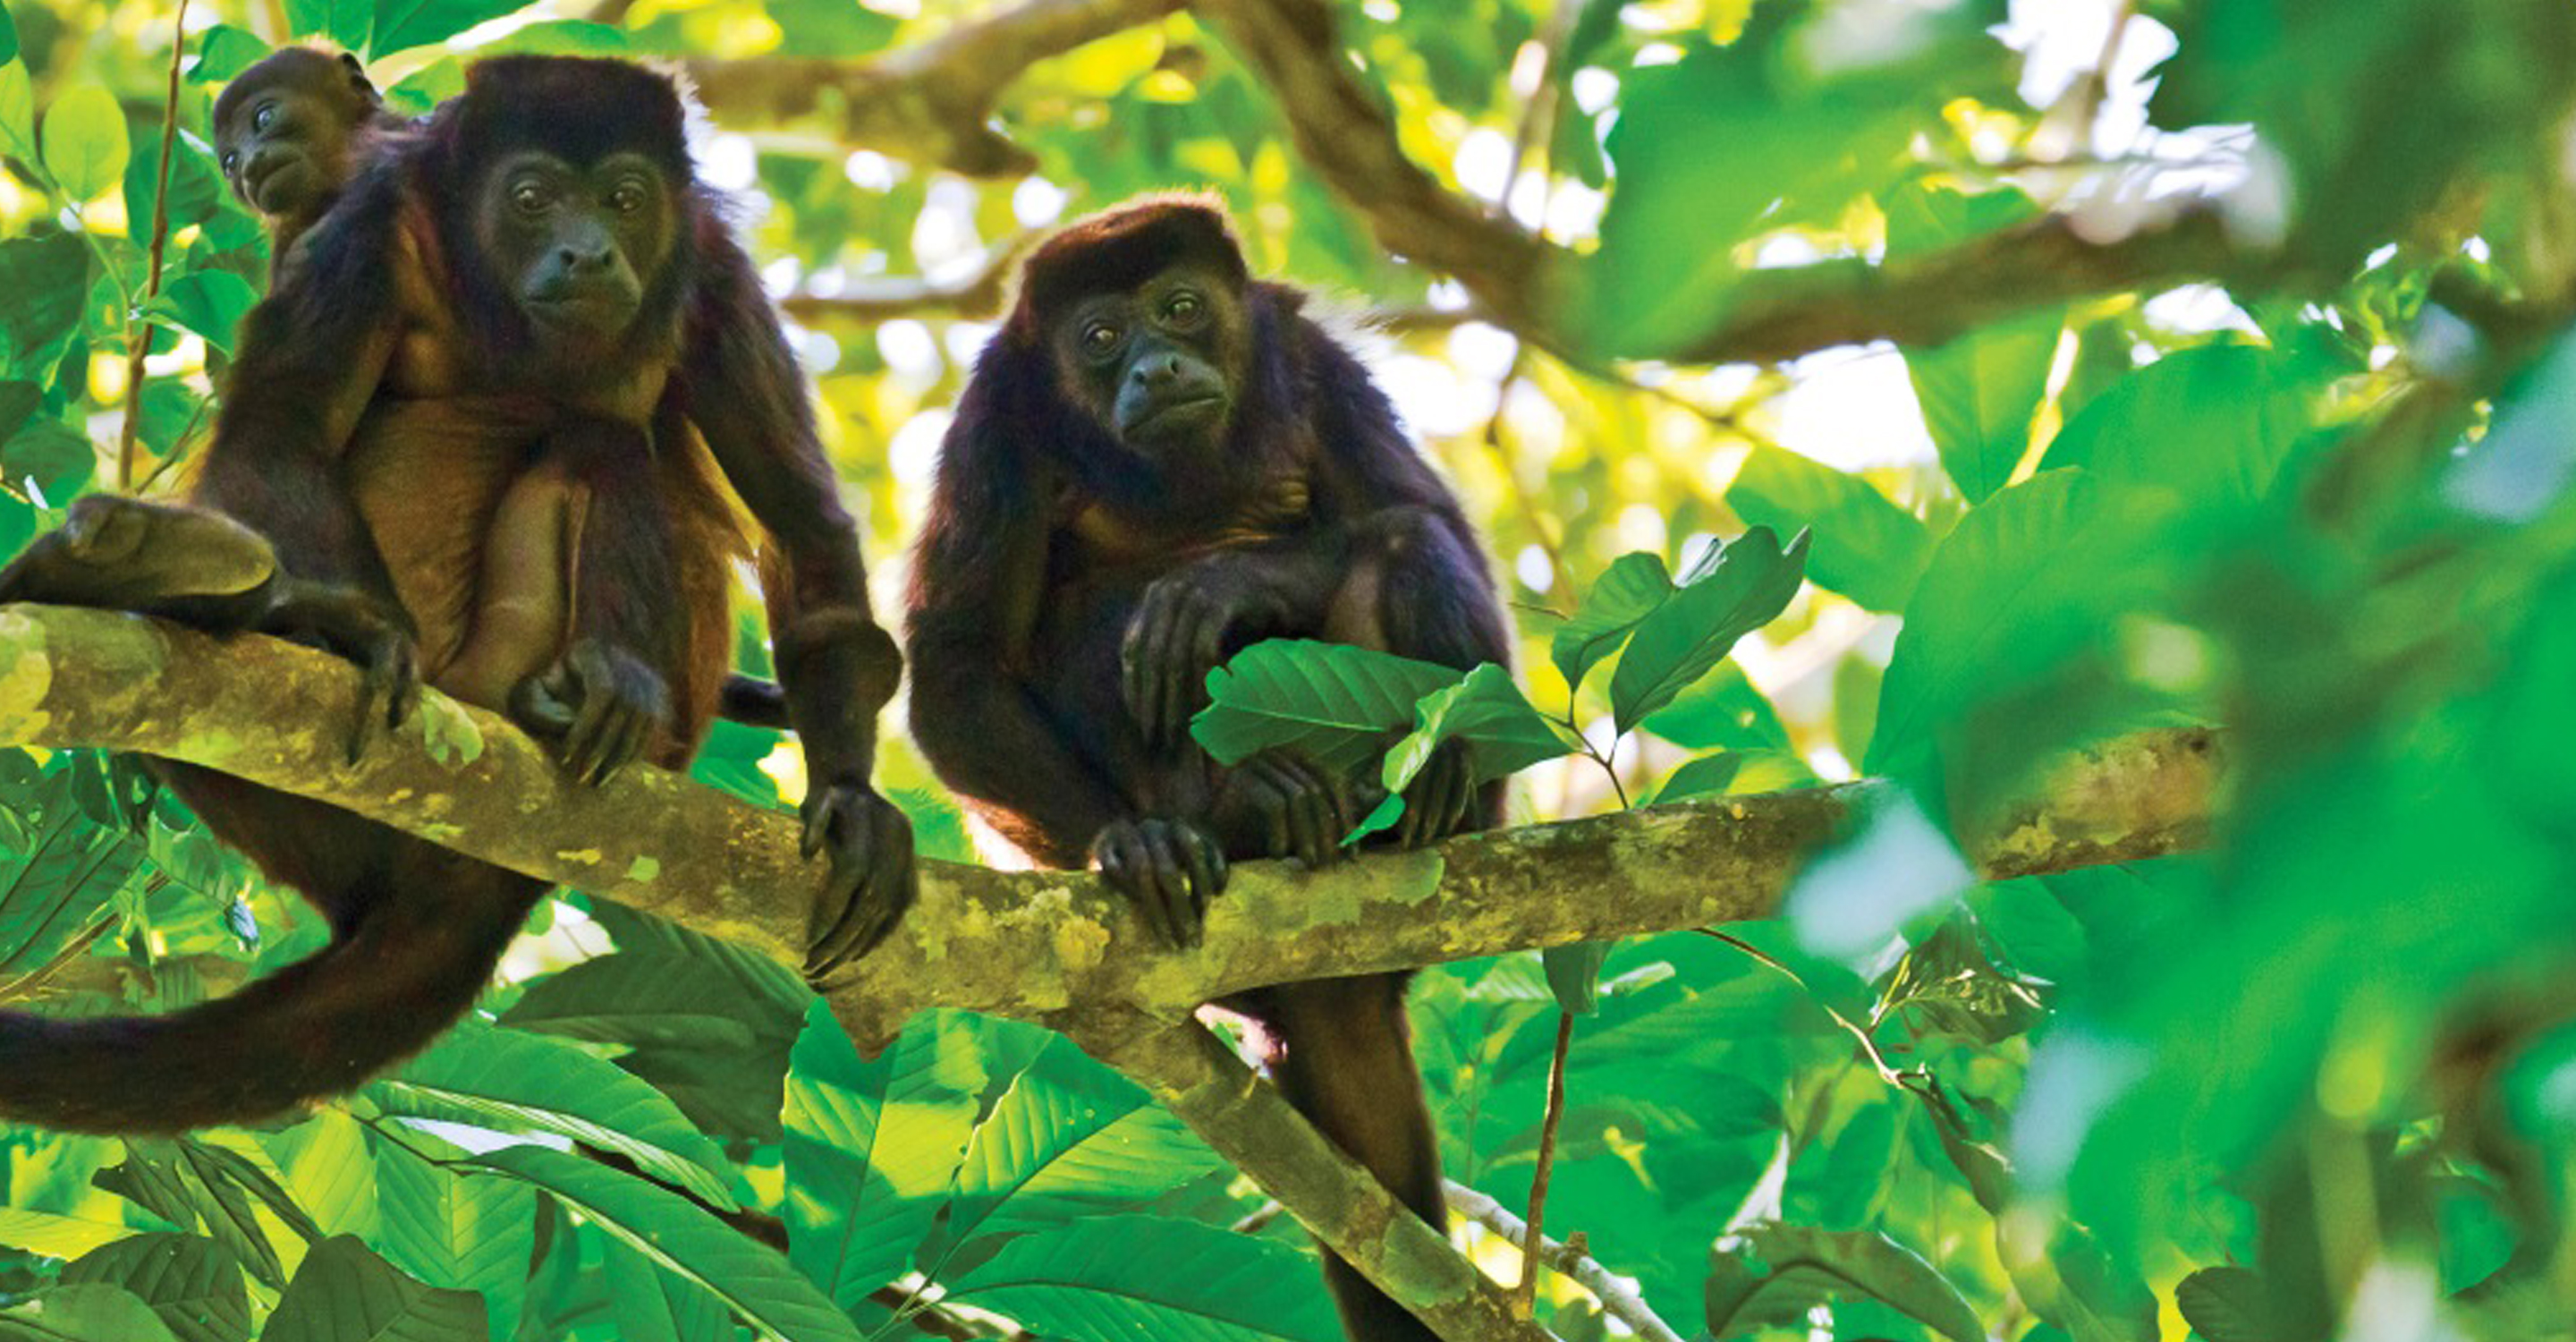 Jungle monkeys. Тропические леса Африки приматы. Обезьяны тропических лесов Африки. Обезьяна тропического леса Индии. Обезьяны — мартышки сельвы Южной Америки.